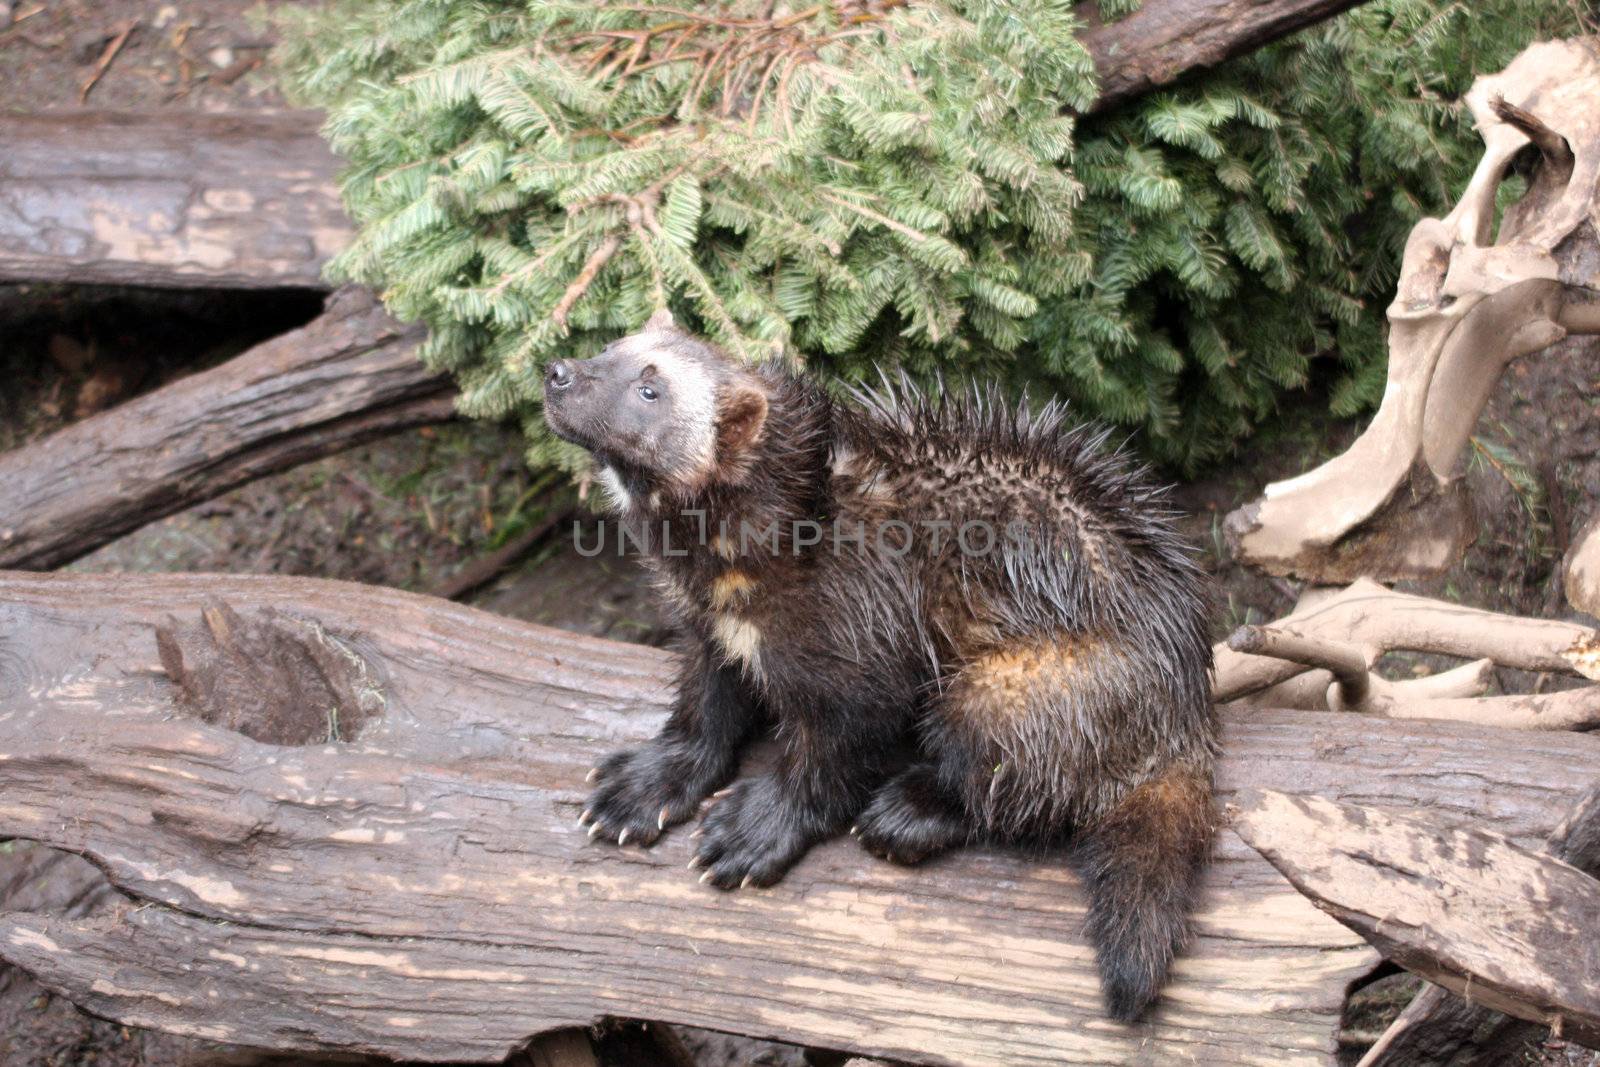 Wolverine.  Photo taken at Northwest Trek Wildlife Park, WA.